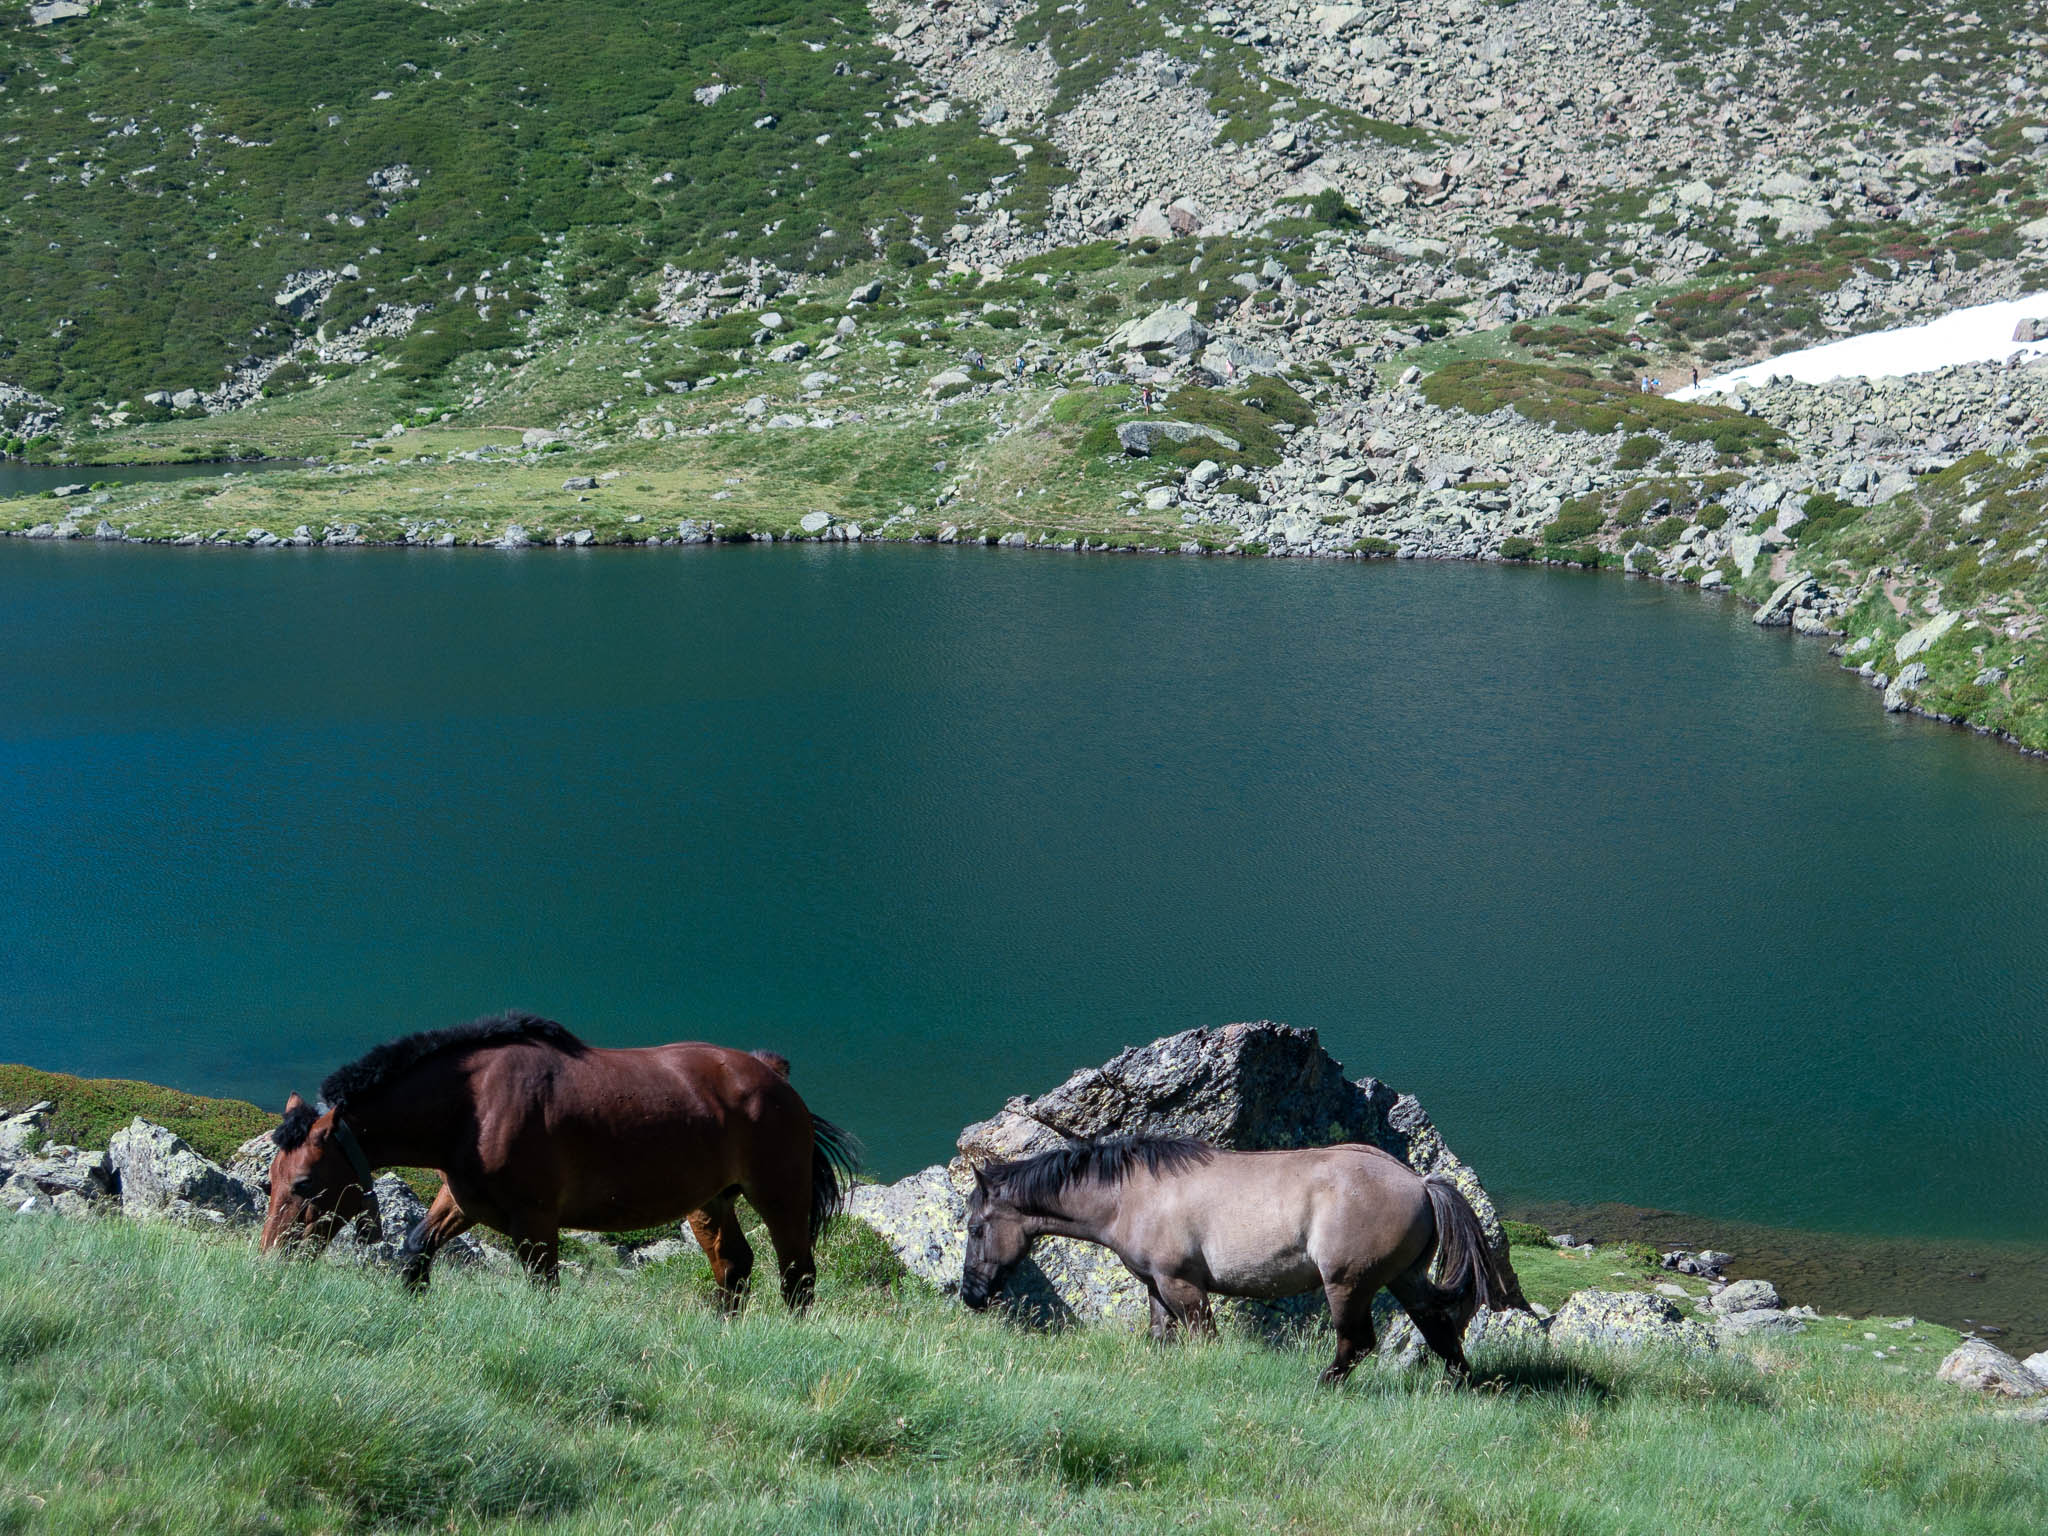 Estanys de Tristaina, Bergsee in Andorra, im Vordergrund zwei Pferde die grasen